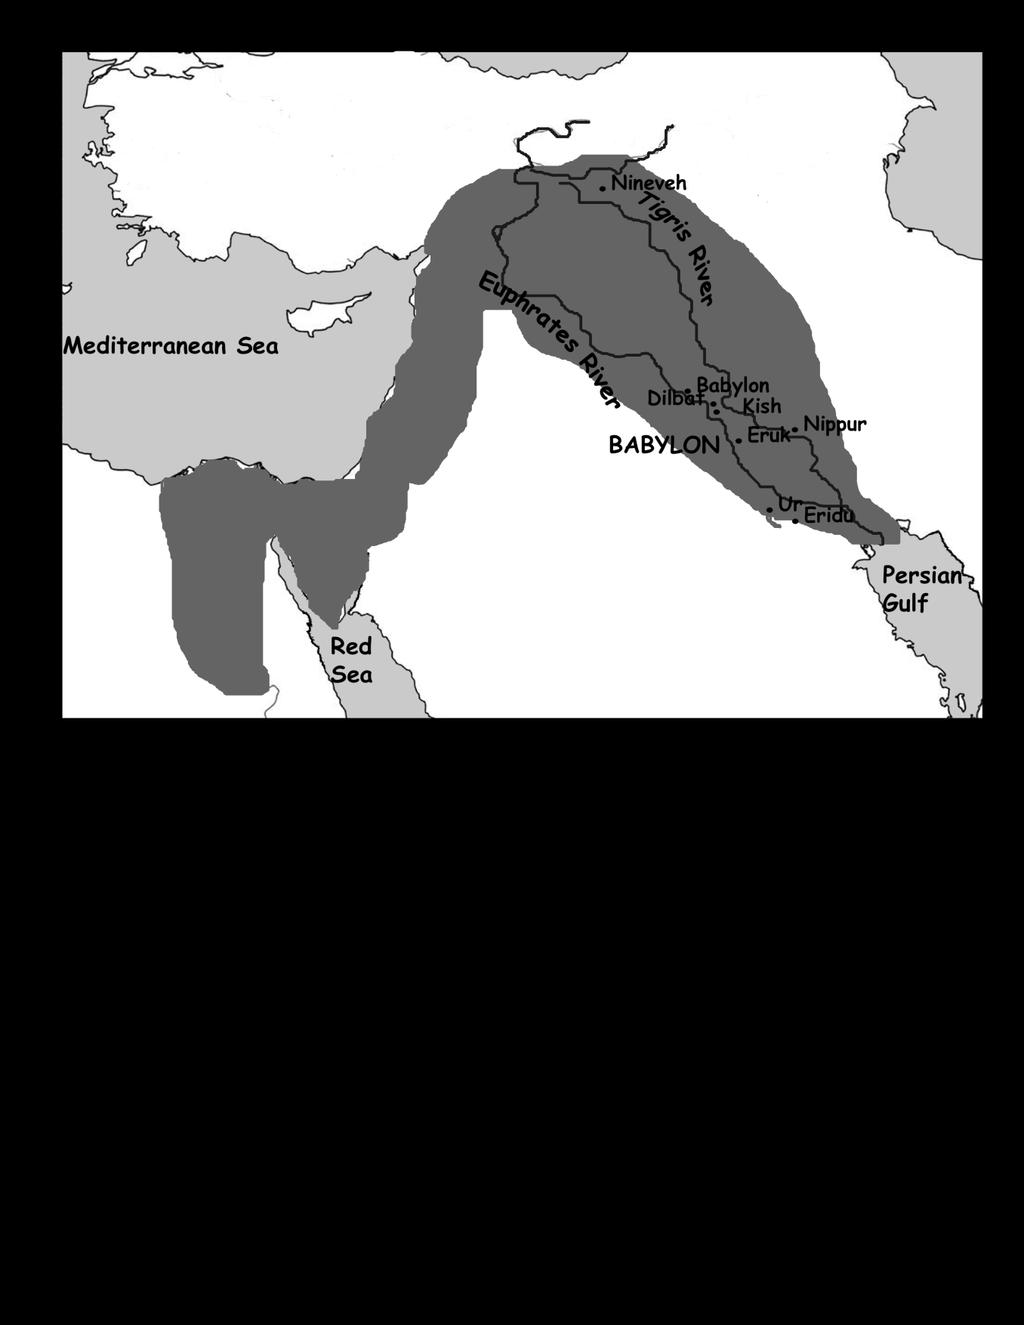 Assyrian Empire